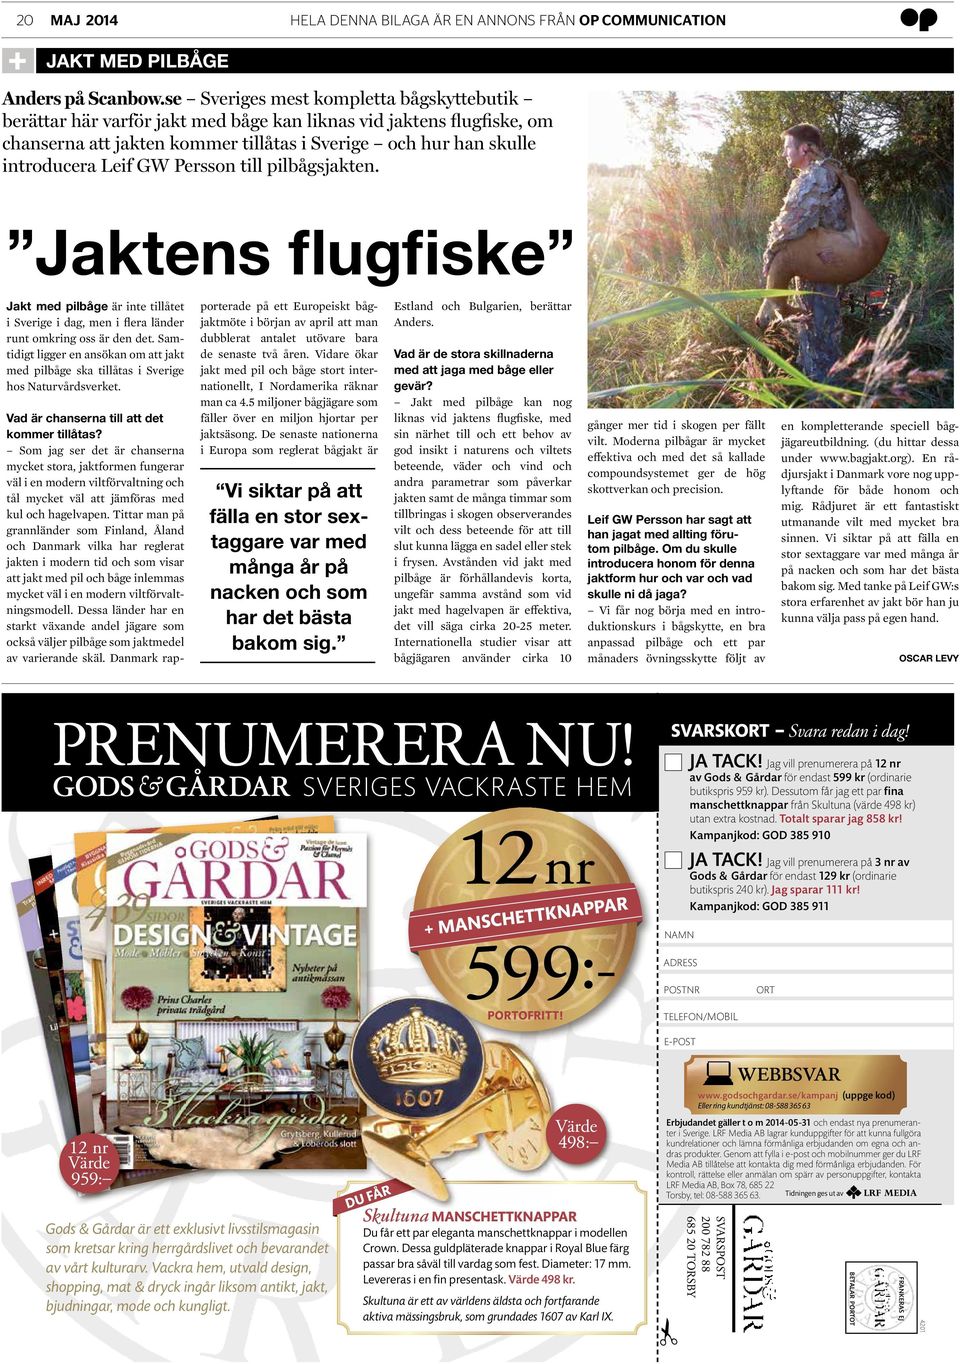 Persson till pilbågsjakten. Jaktens flugfiske Jakt med pilbåge är inte tillåtet i Sverige i dag, men i flera länder runt omkring oss är den det.